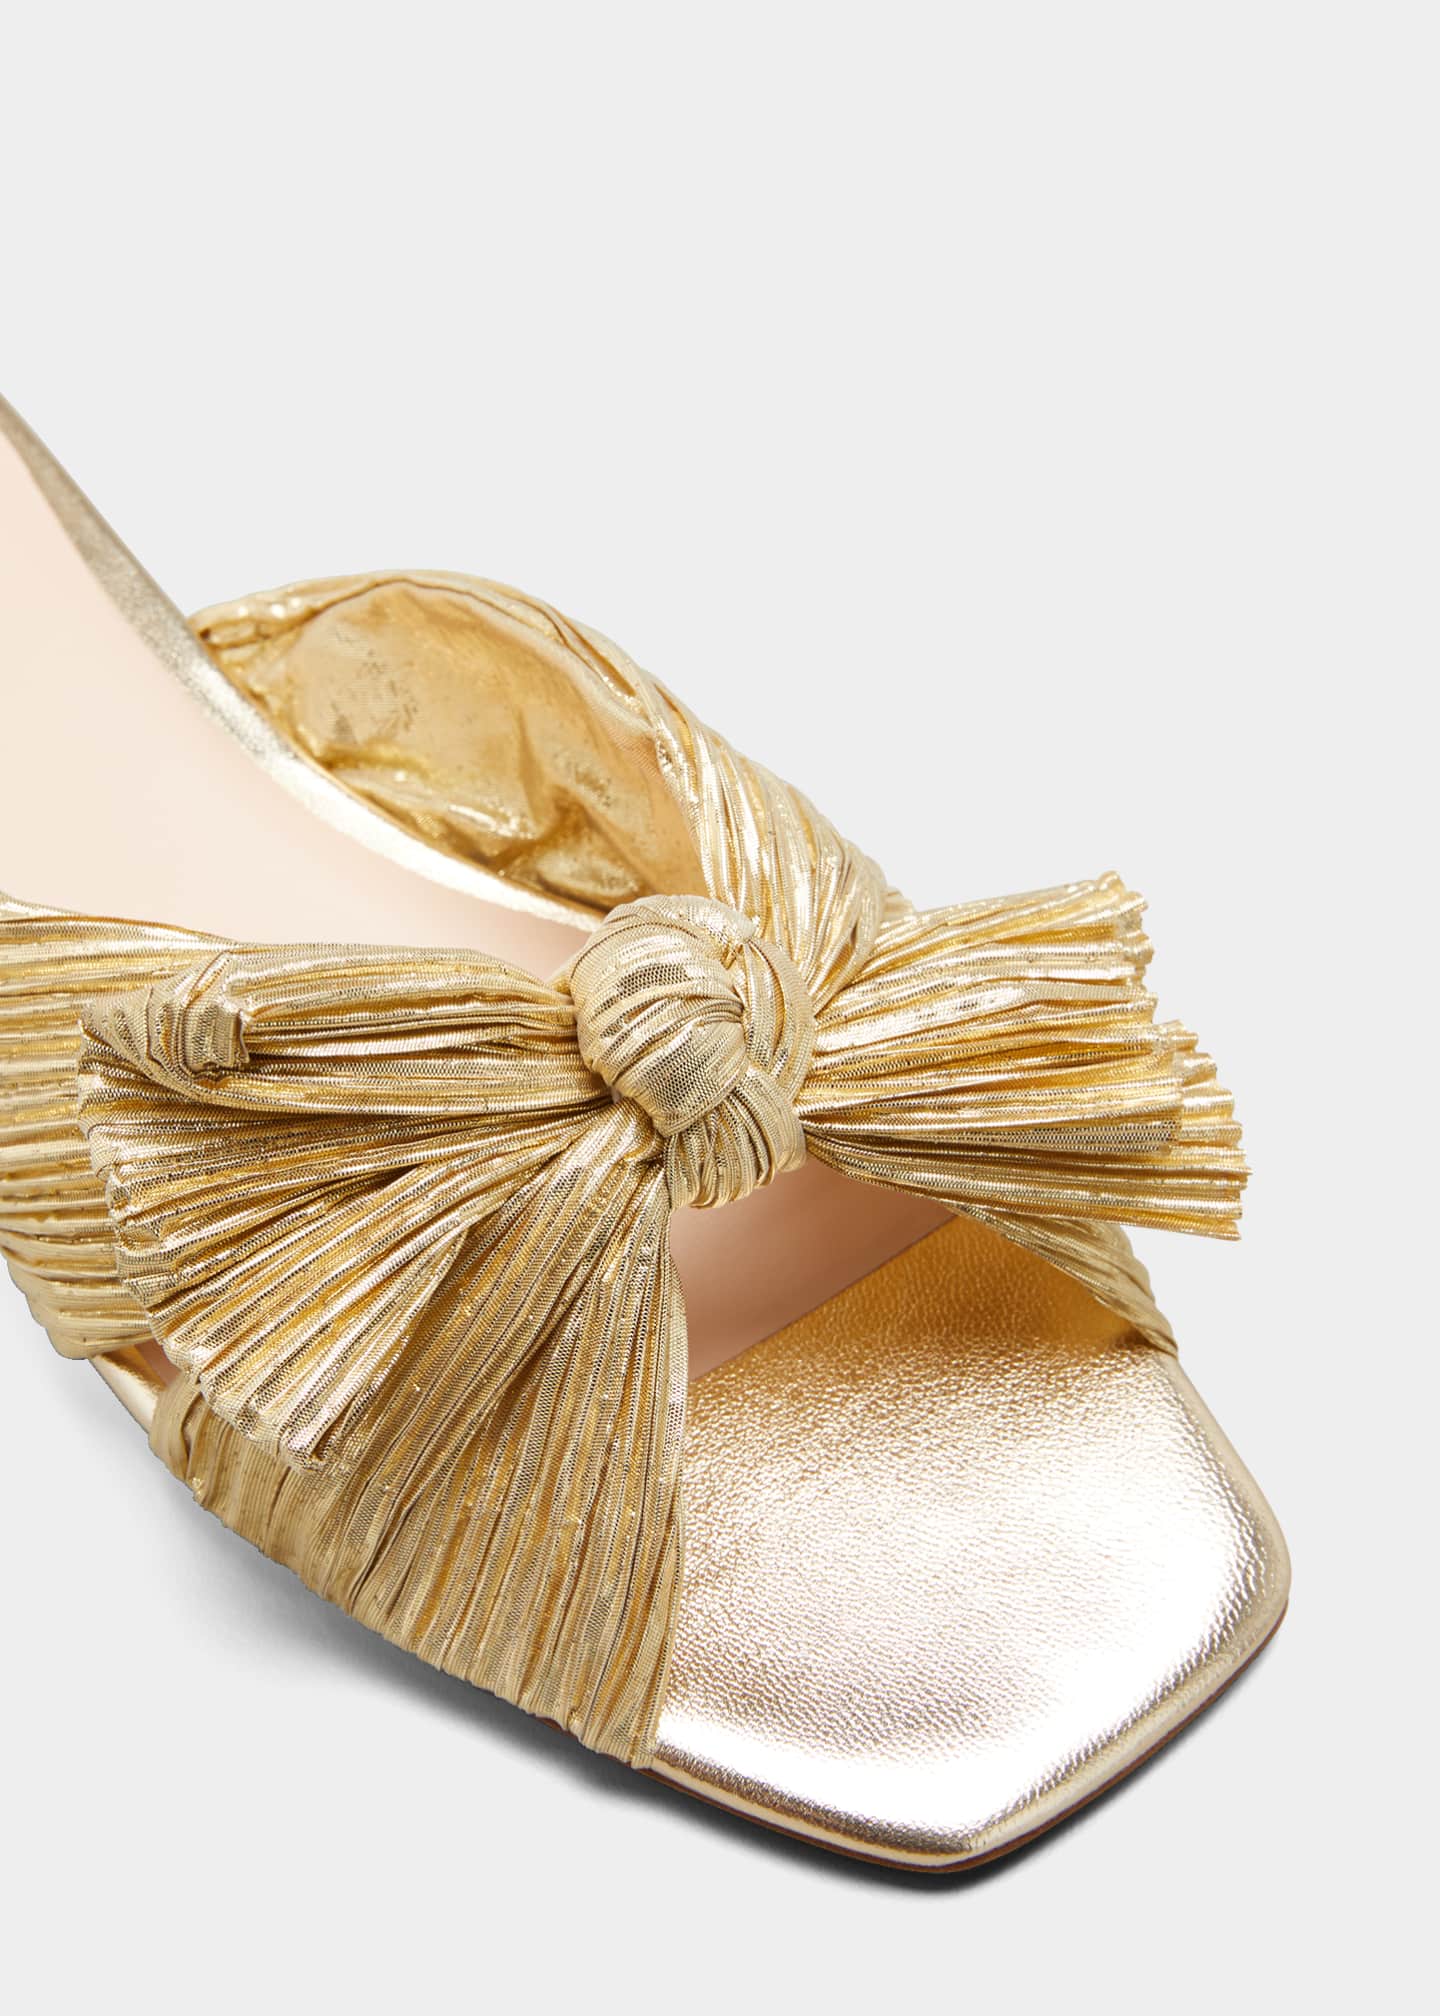 Loeffler Randall Daphne Metallic Knotted Slide Sandals - Bergdorf Goodman